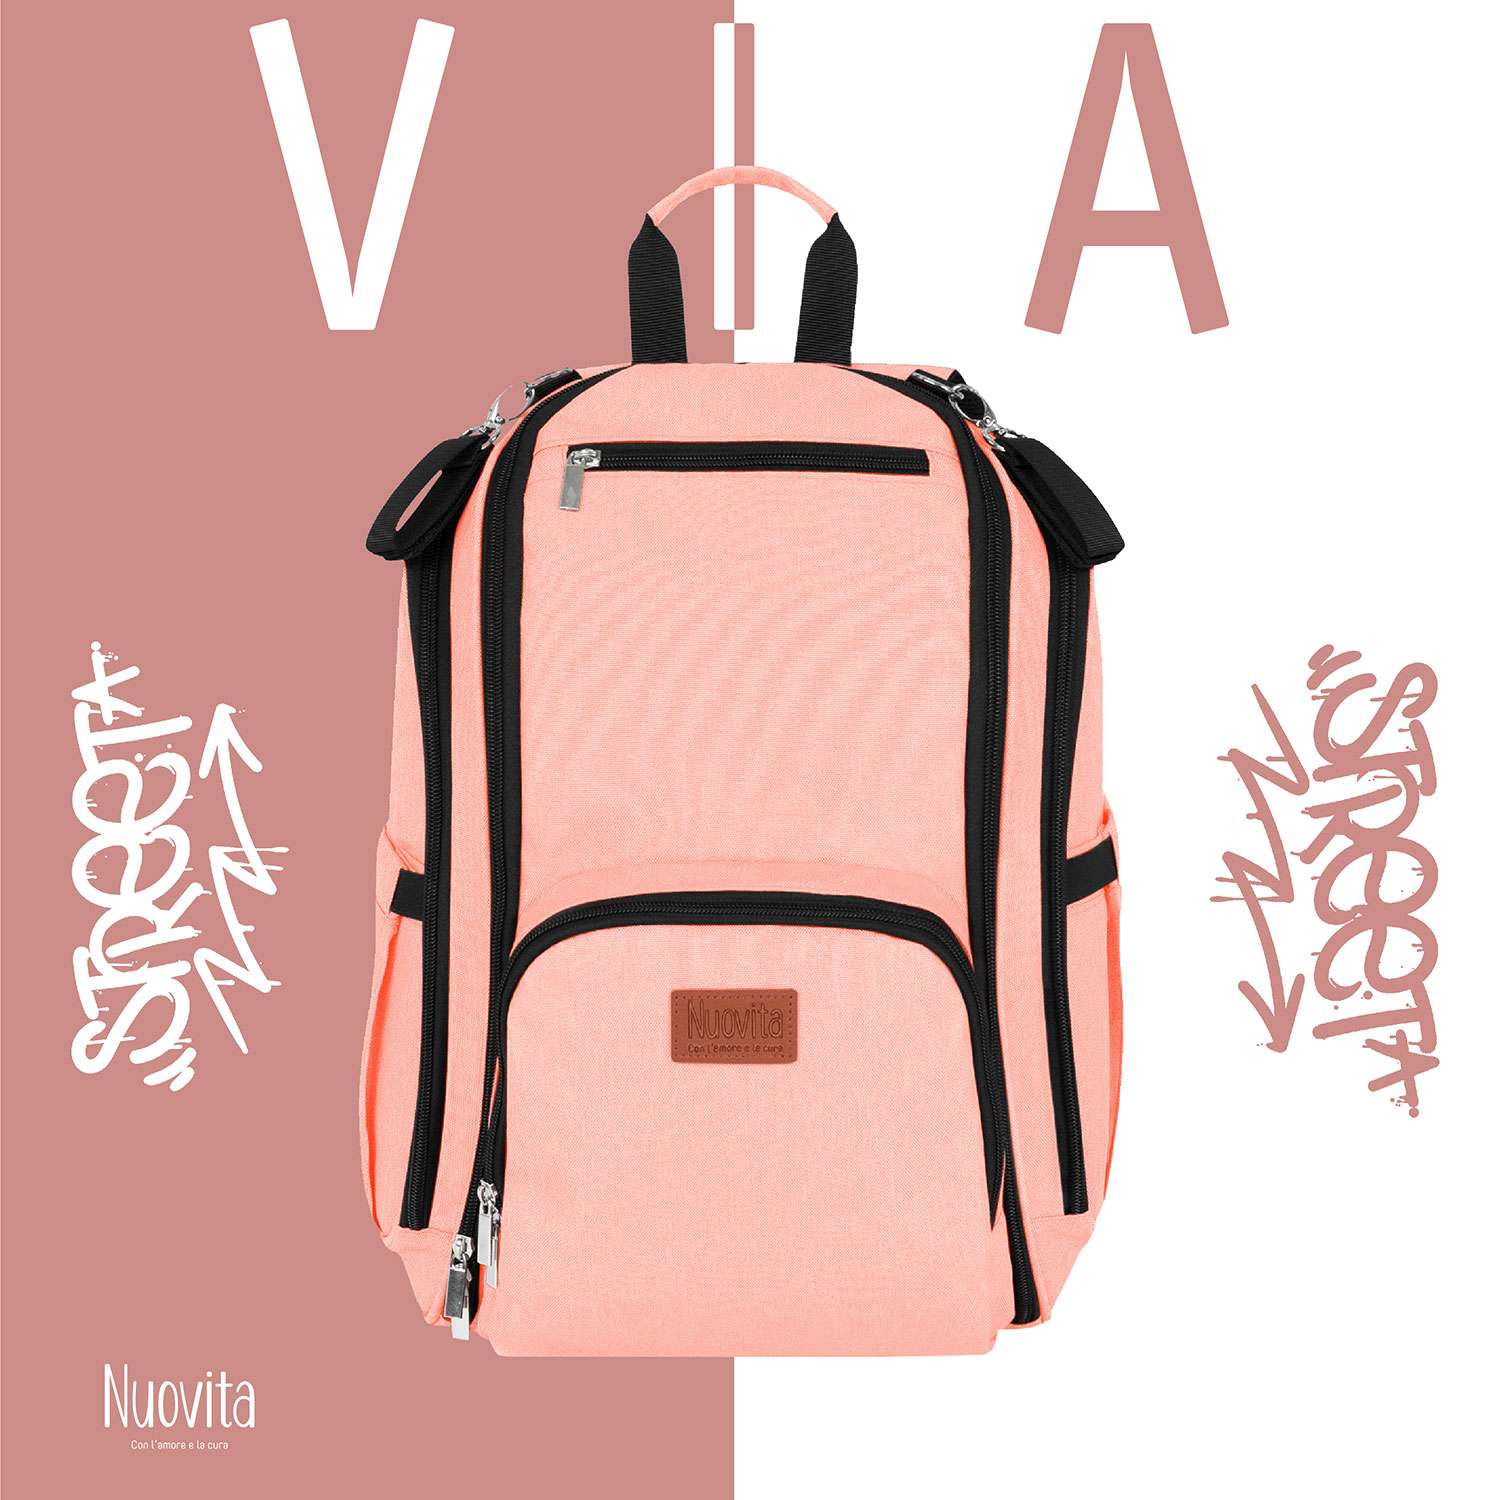 Рюкзак для мамы Nuovita CAPCAP via Розовый - фото 2